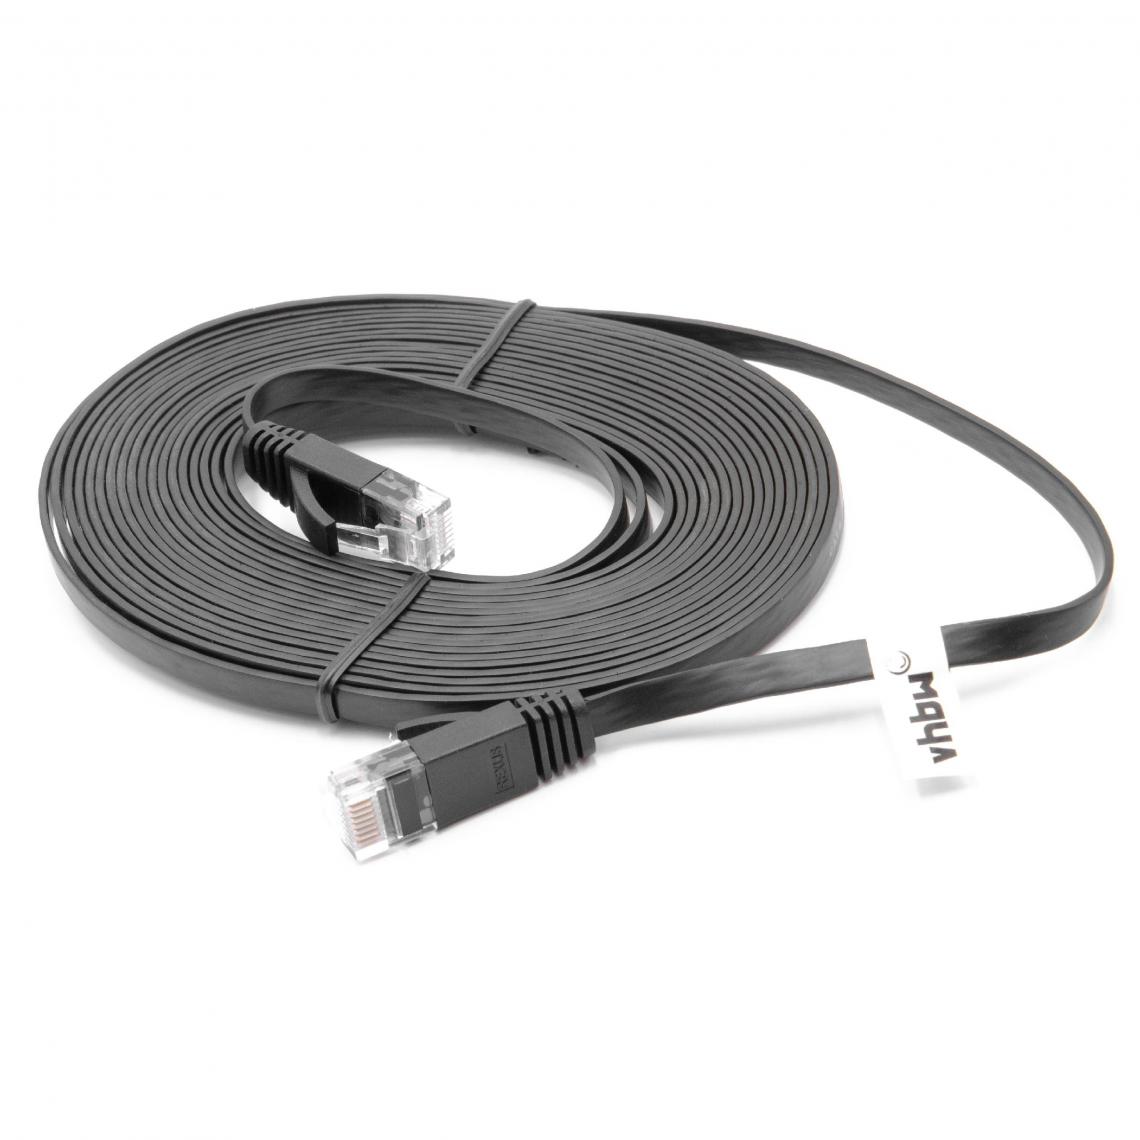 Vhbw - vhbw câble de réseau câble LAN Cat6 5m noir câble plat - Accessoires alimentation